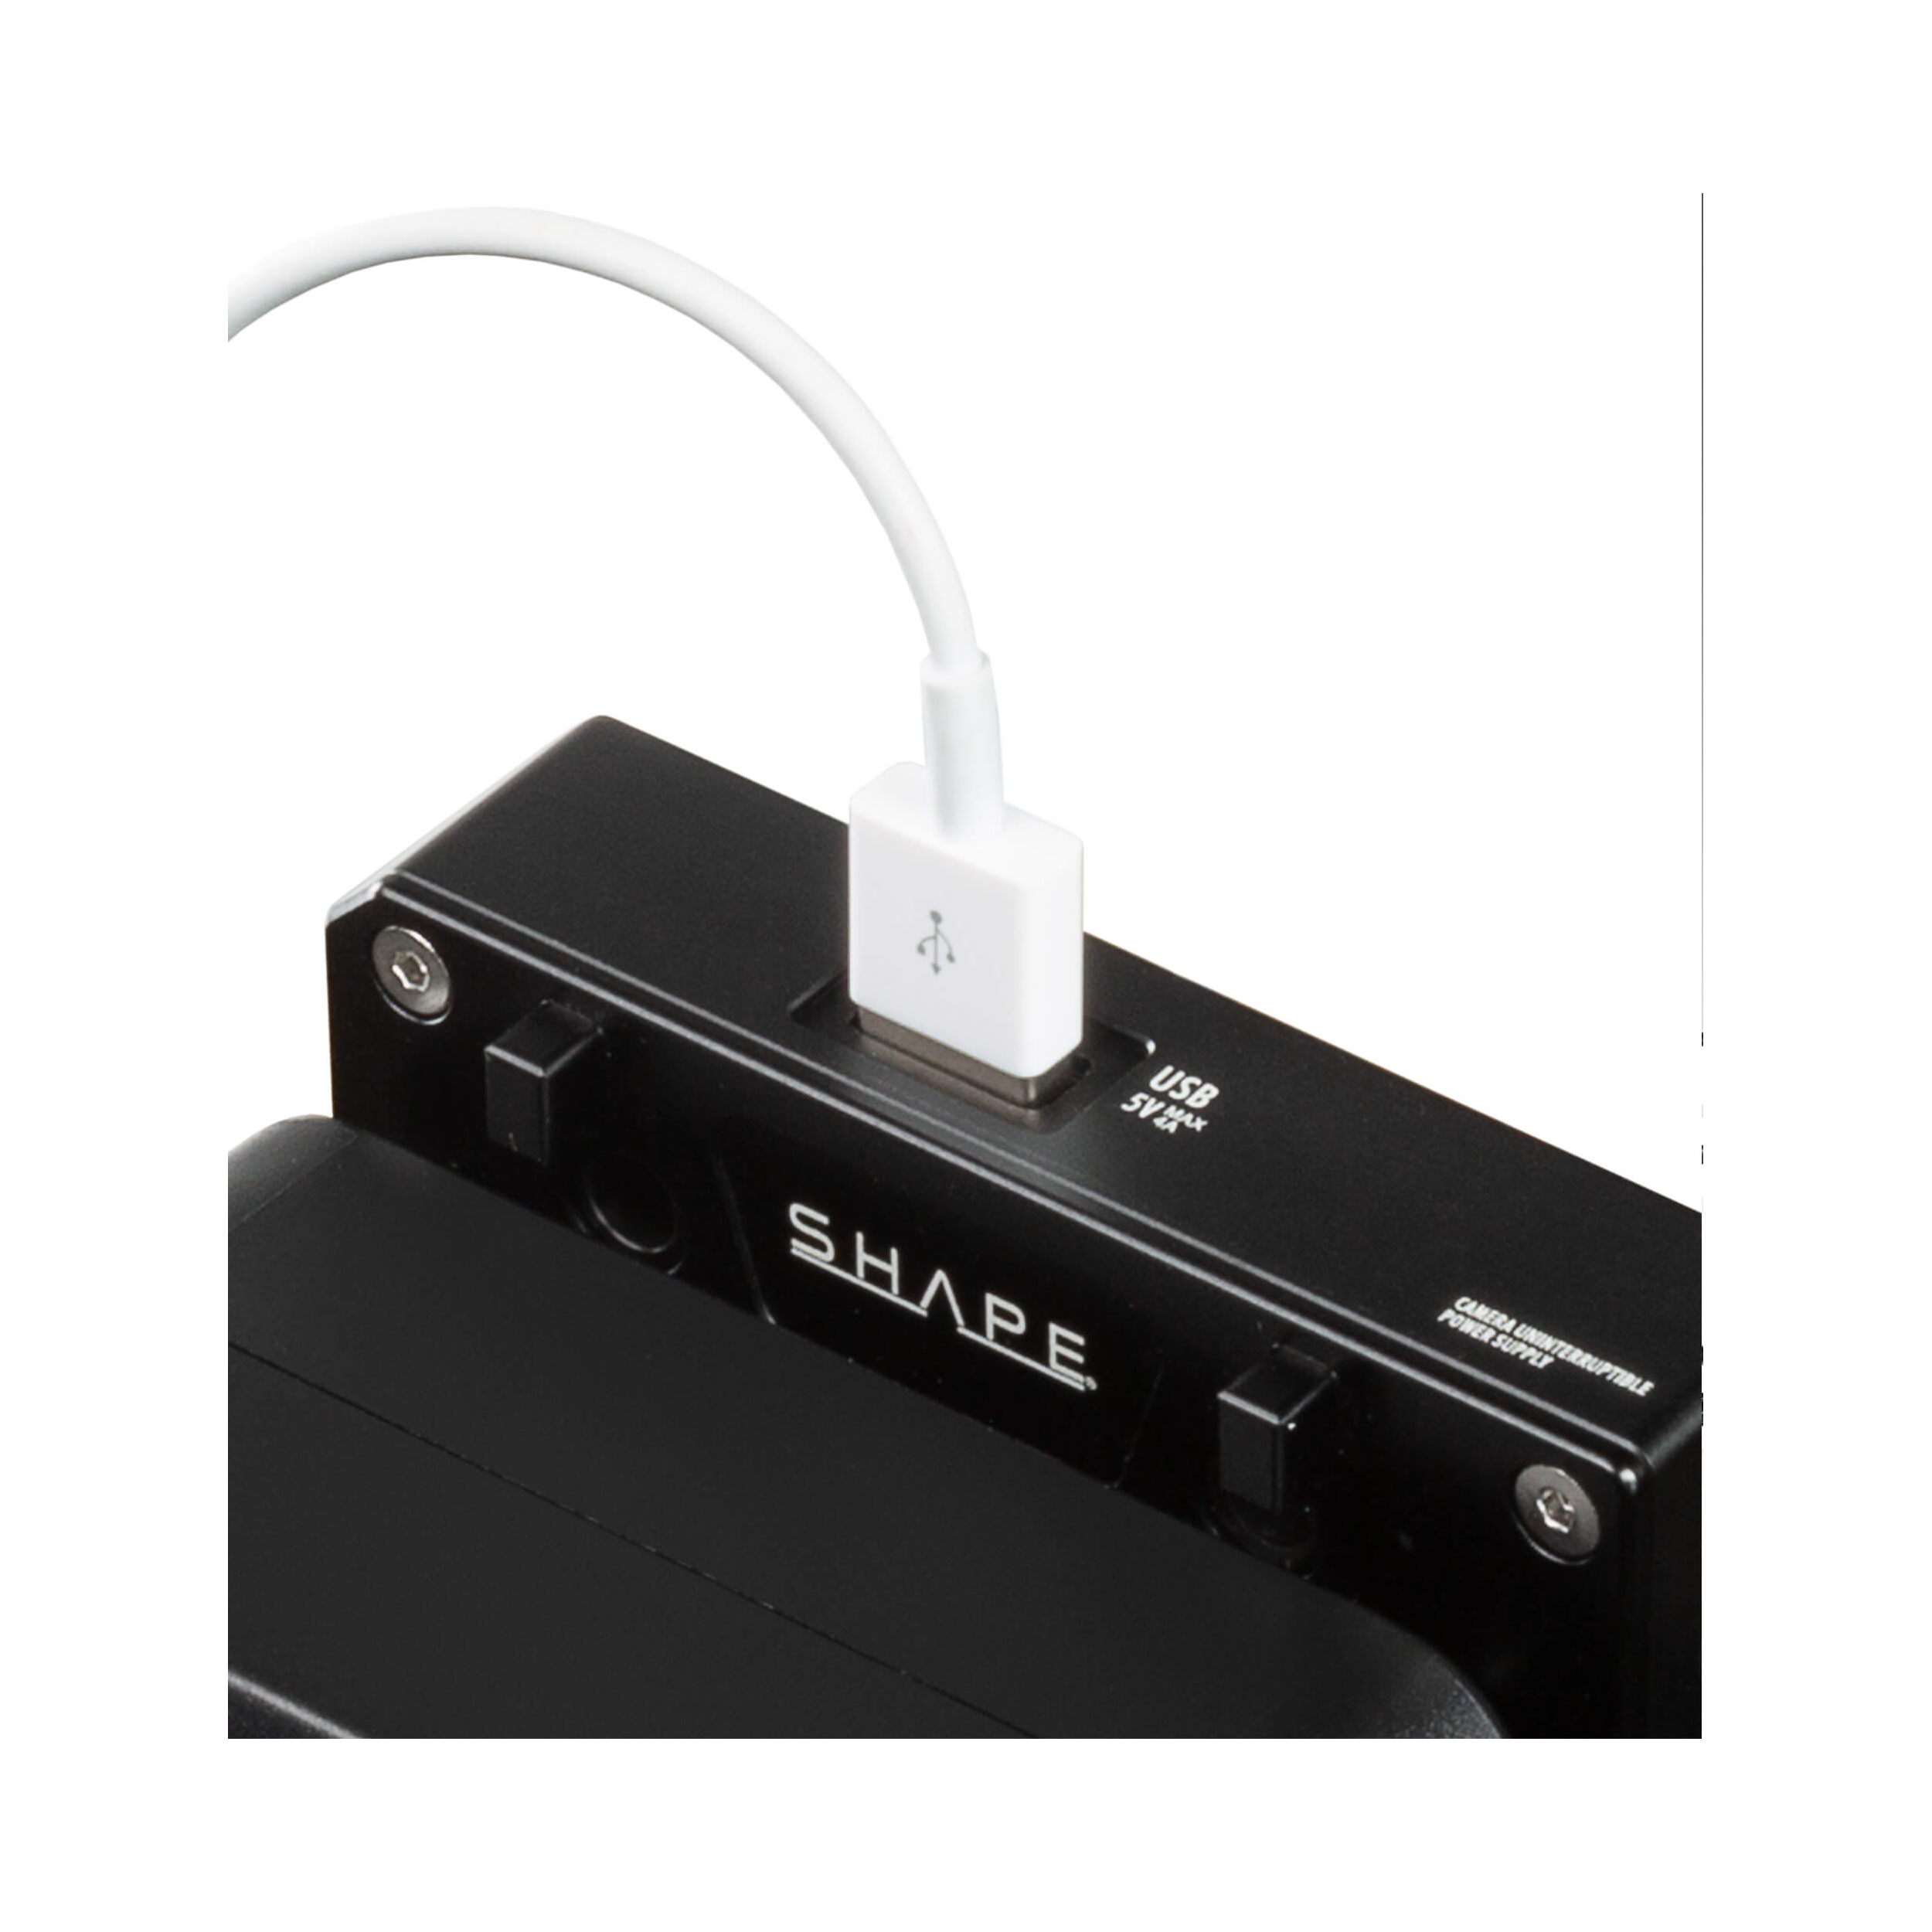 SHAPE J-Box Camera Power & Charger for Blackmagic URSA Mini/URSA Mini Pro (V-Mount)